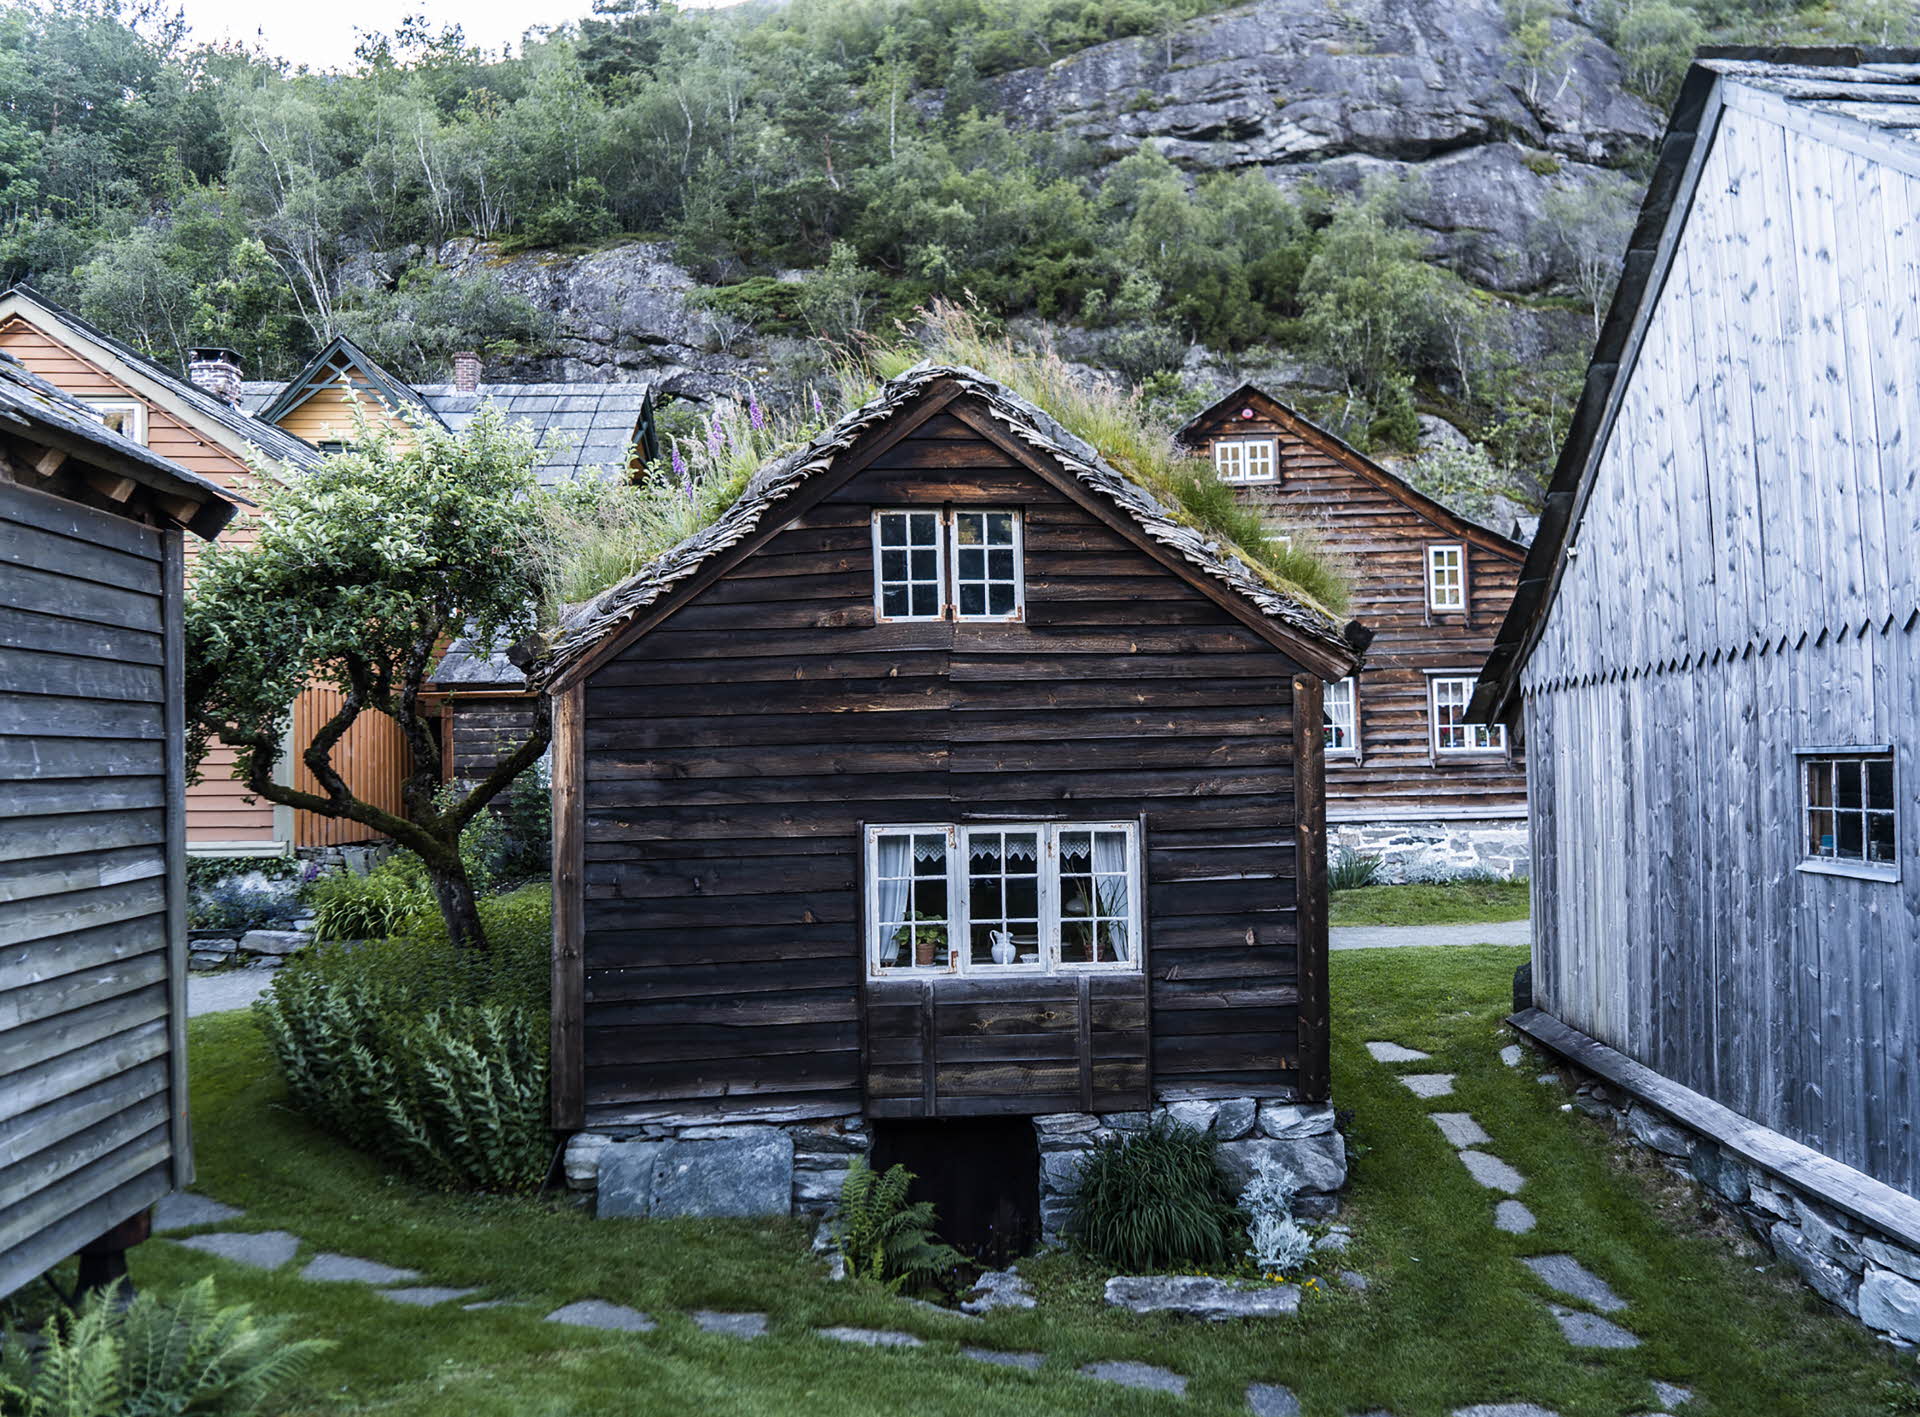 挪威哈当厄尔阿加通的棕色木制小屋始建于 1220 年初，屋顶长满杂草，坐落在天然石材上面